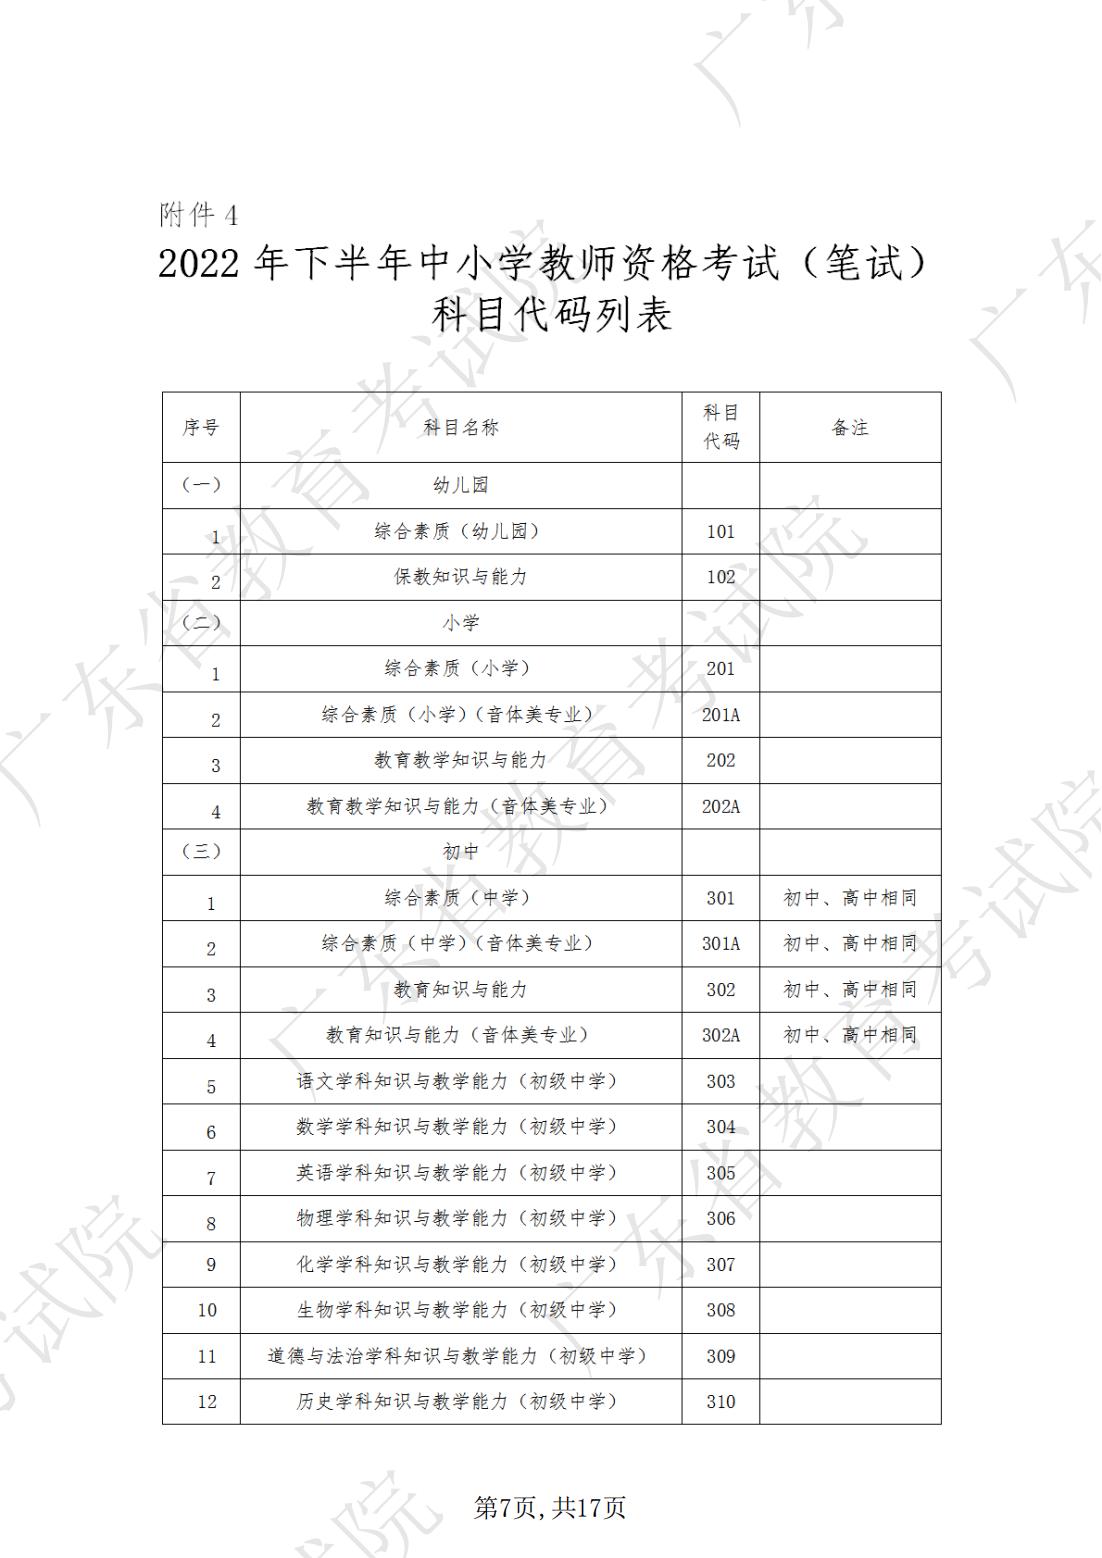 2022-08-18  关于发布《广东省2022年下半年中小学教师资格考试笔试通告》的请示_06.jpg